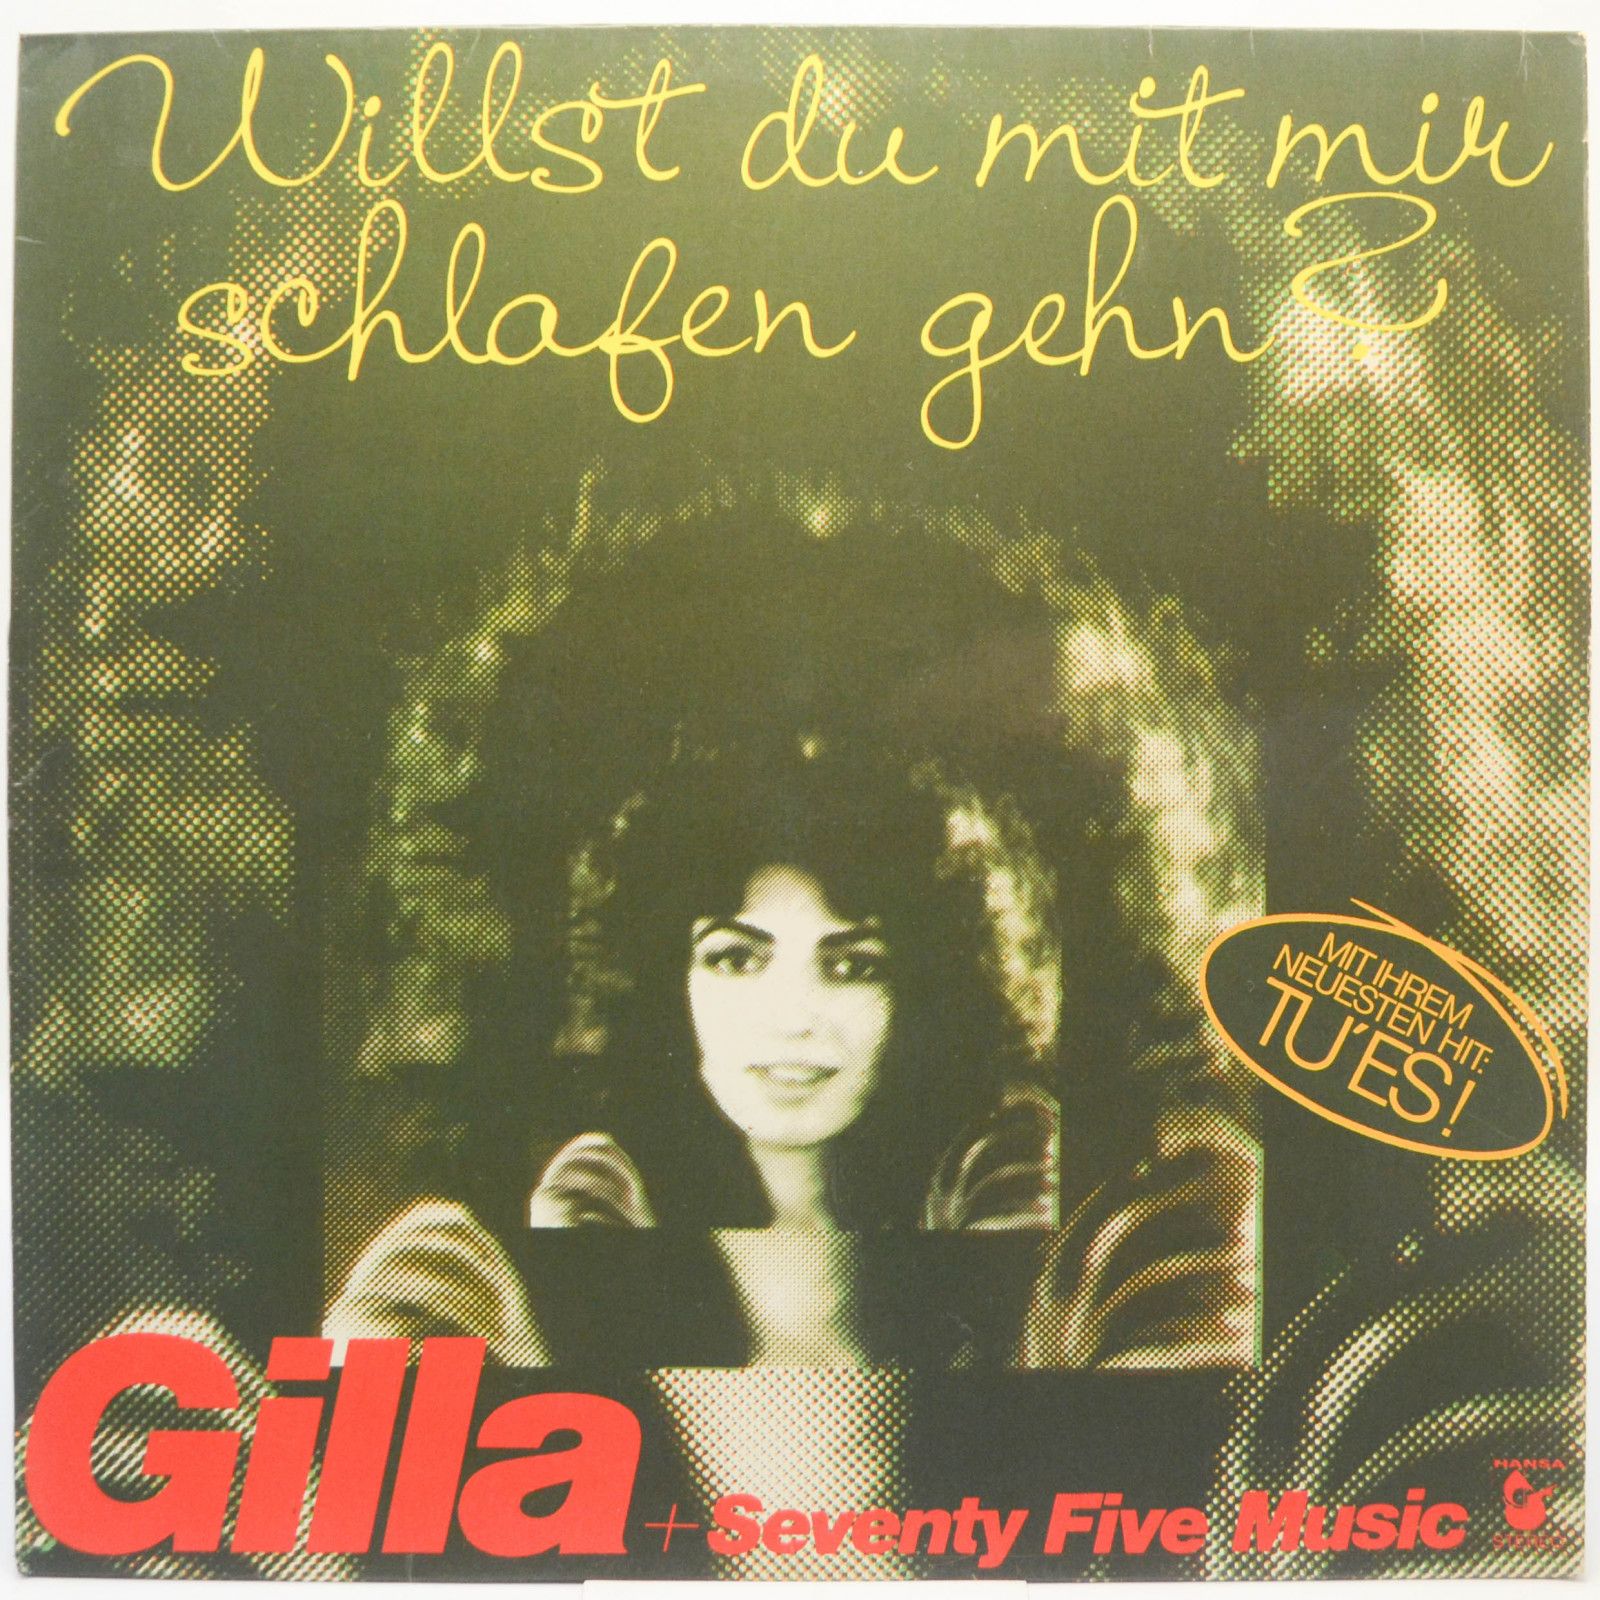 Gilla + Seventy Five Music — Willst Du Mit Mir Schlafen Gehn?, 1975